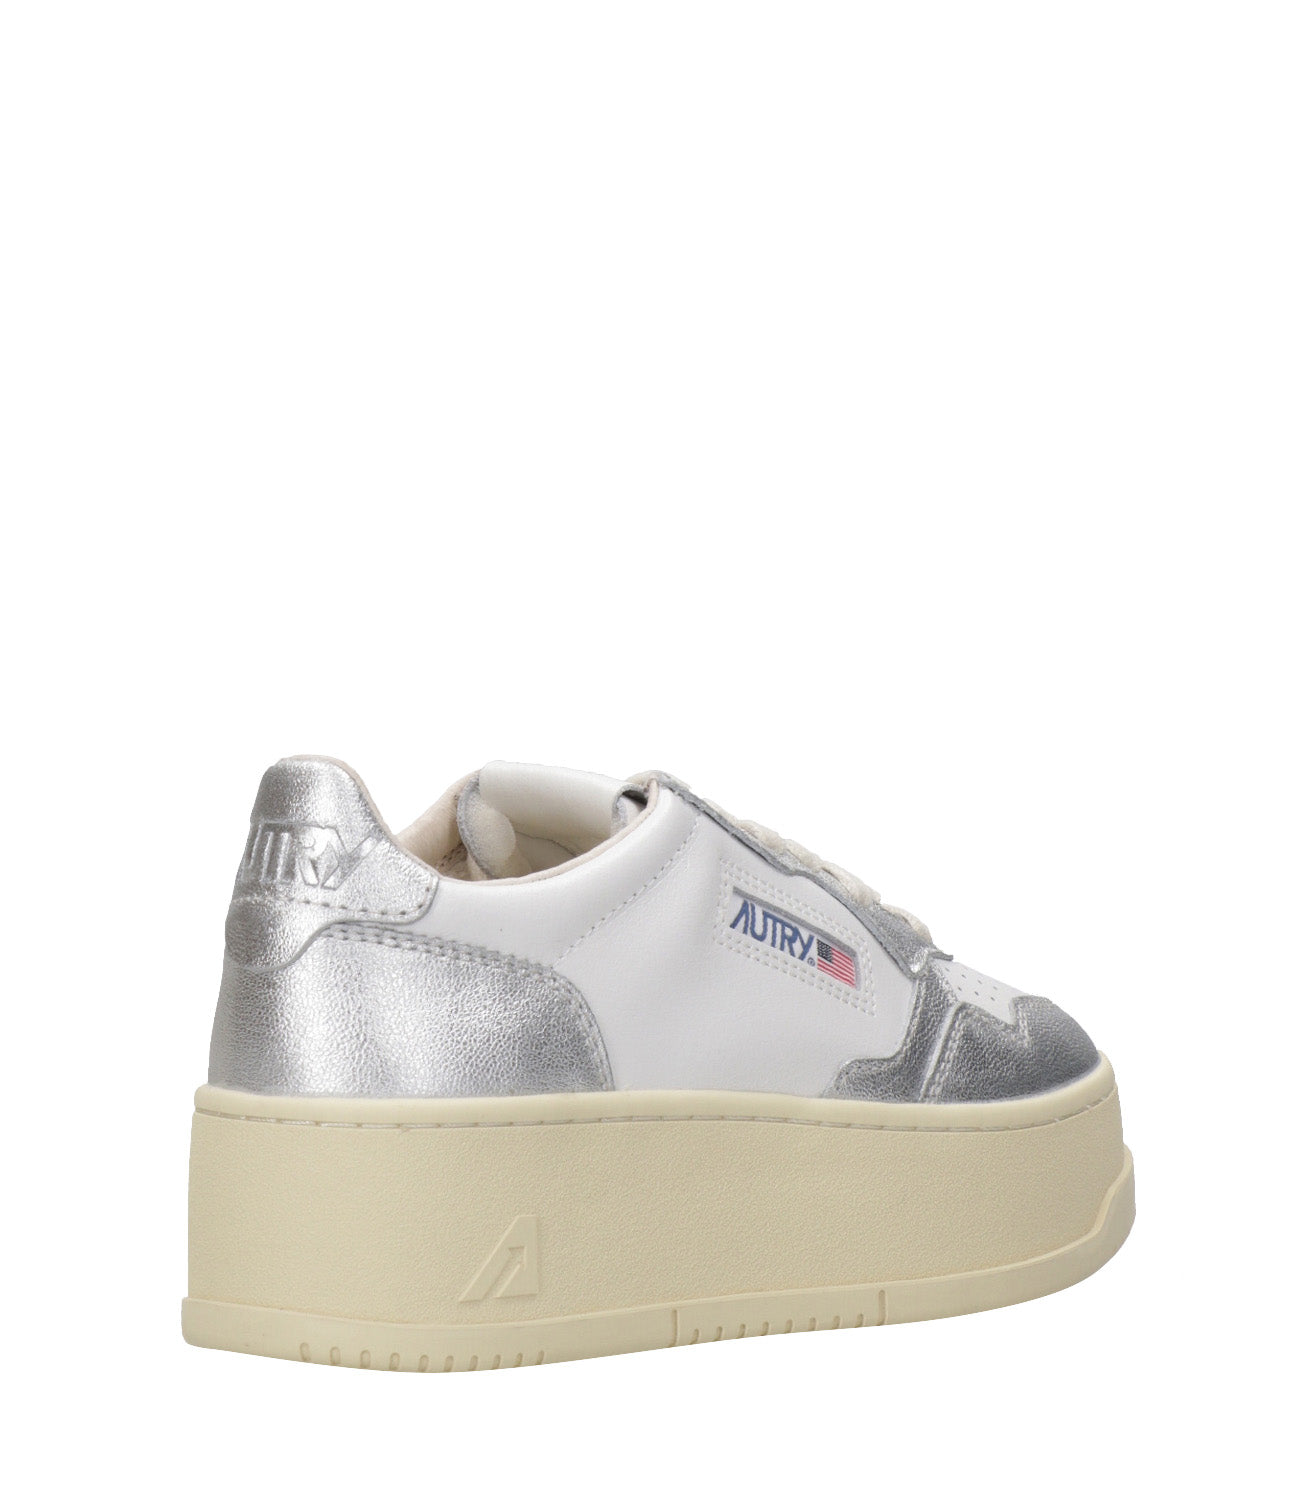 Autry | Sneakers Platform Low Bianco e Argento